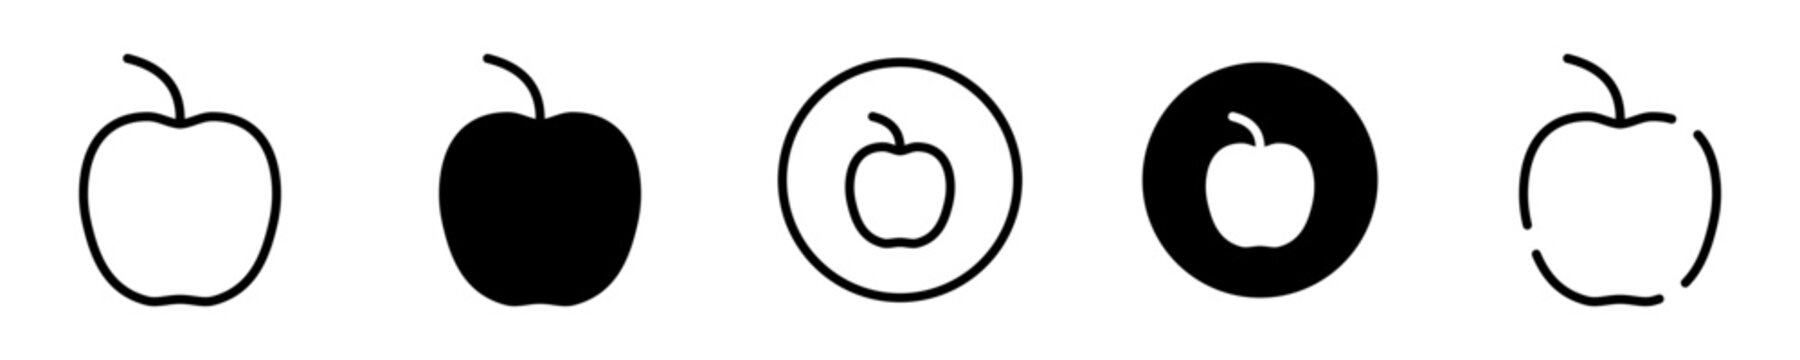 Conjunto de iconos de manzana. Fruta. Concepto de alimento nutritivo. Nutrición. Ilustración vectorial